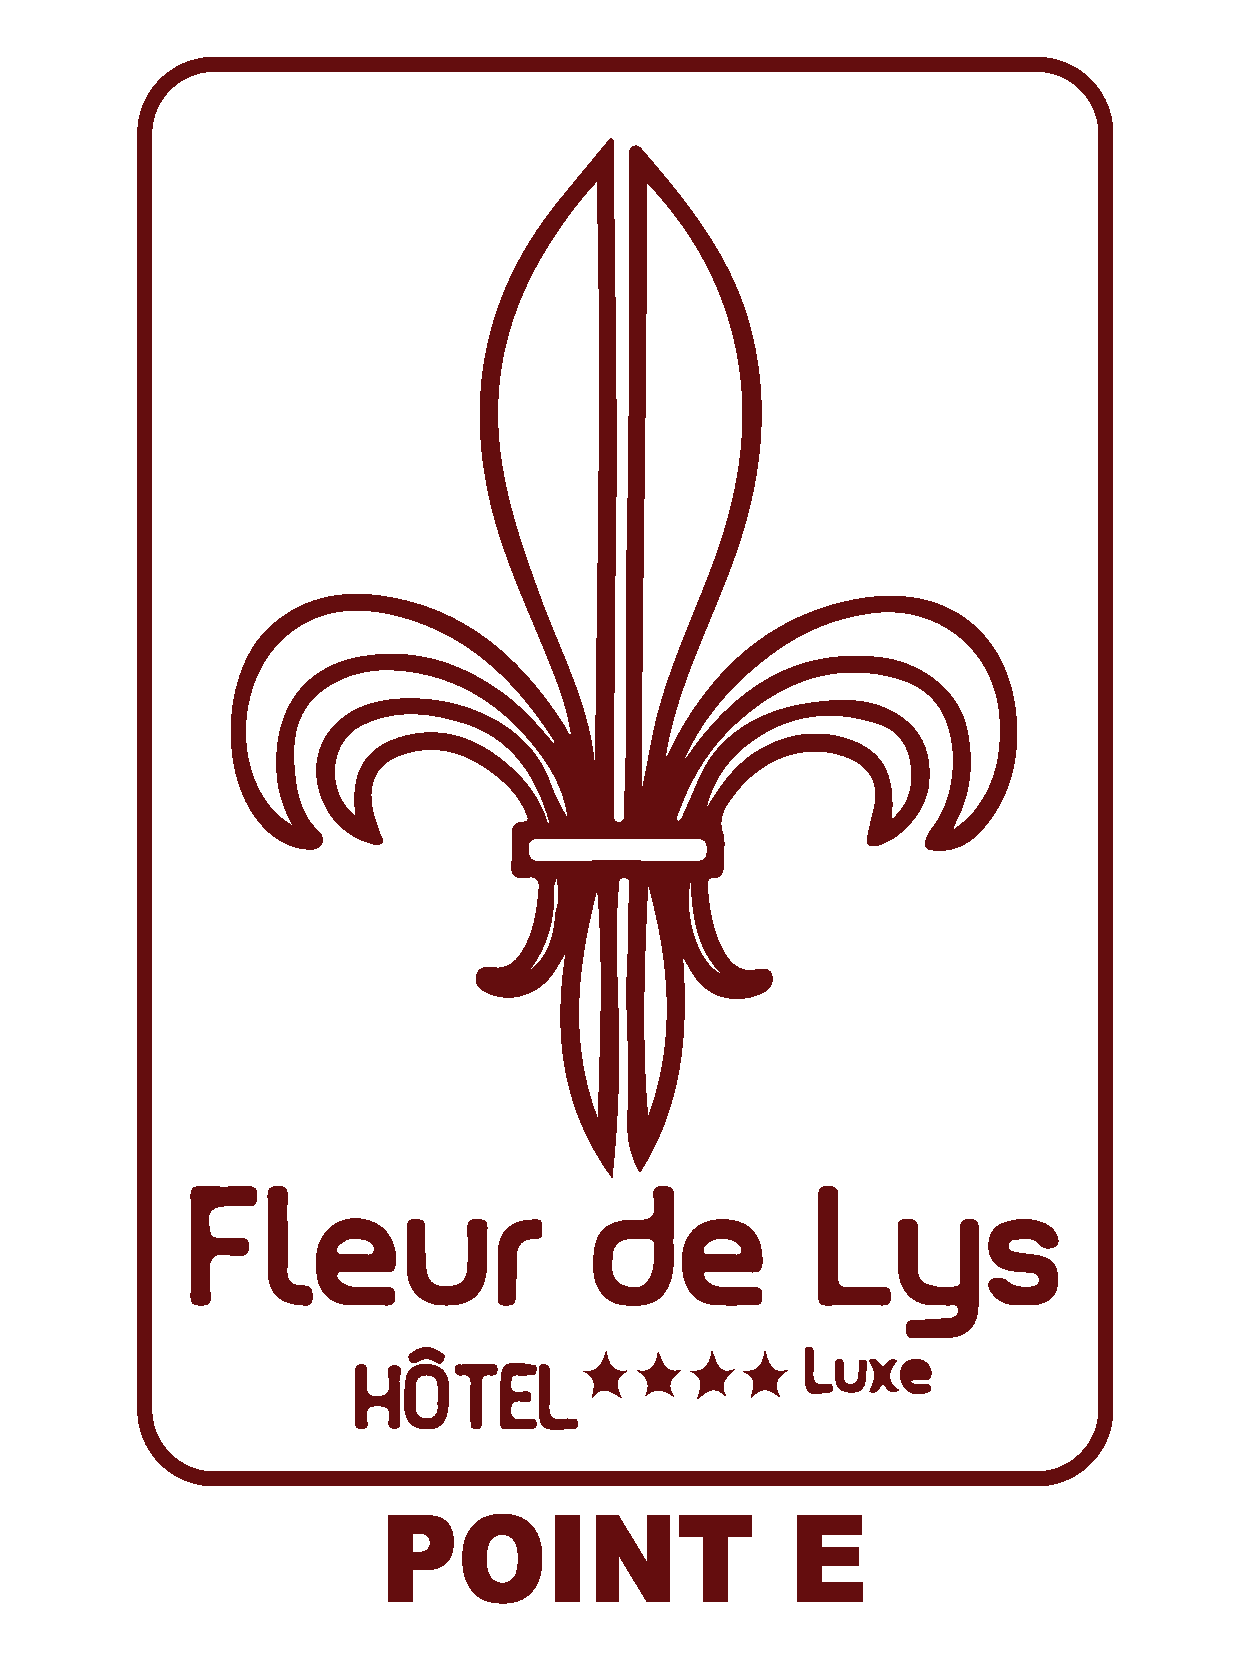 Hôtel Fleur de Lys Point E